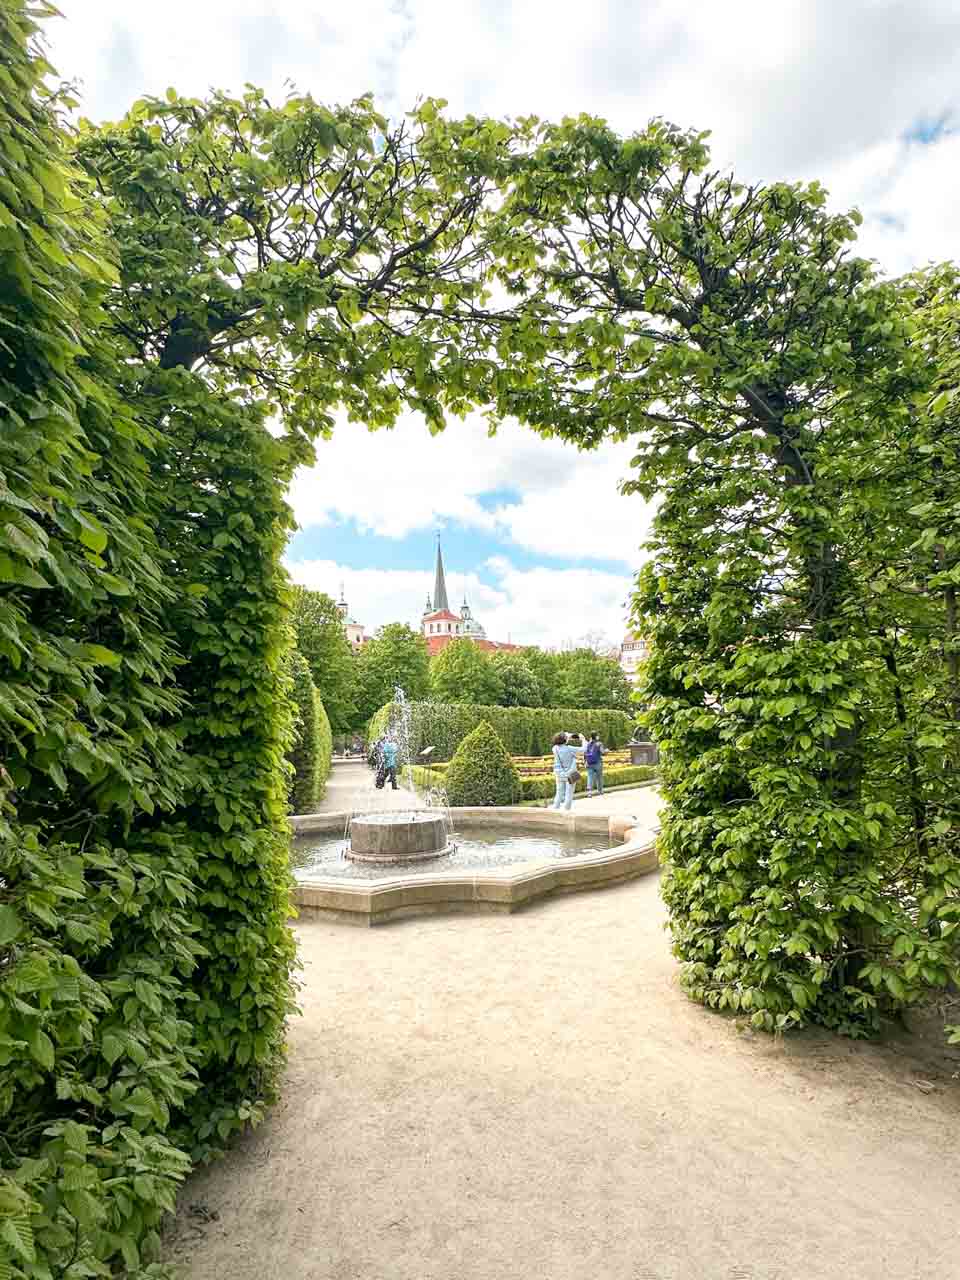 Entrance to the Wallenstein Garden complex in Prague